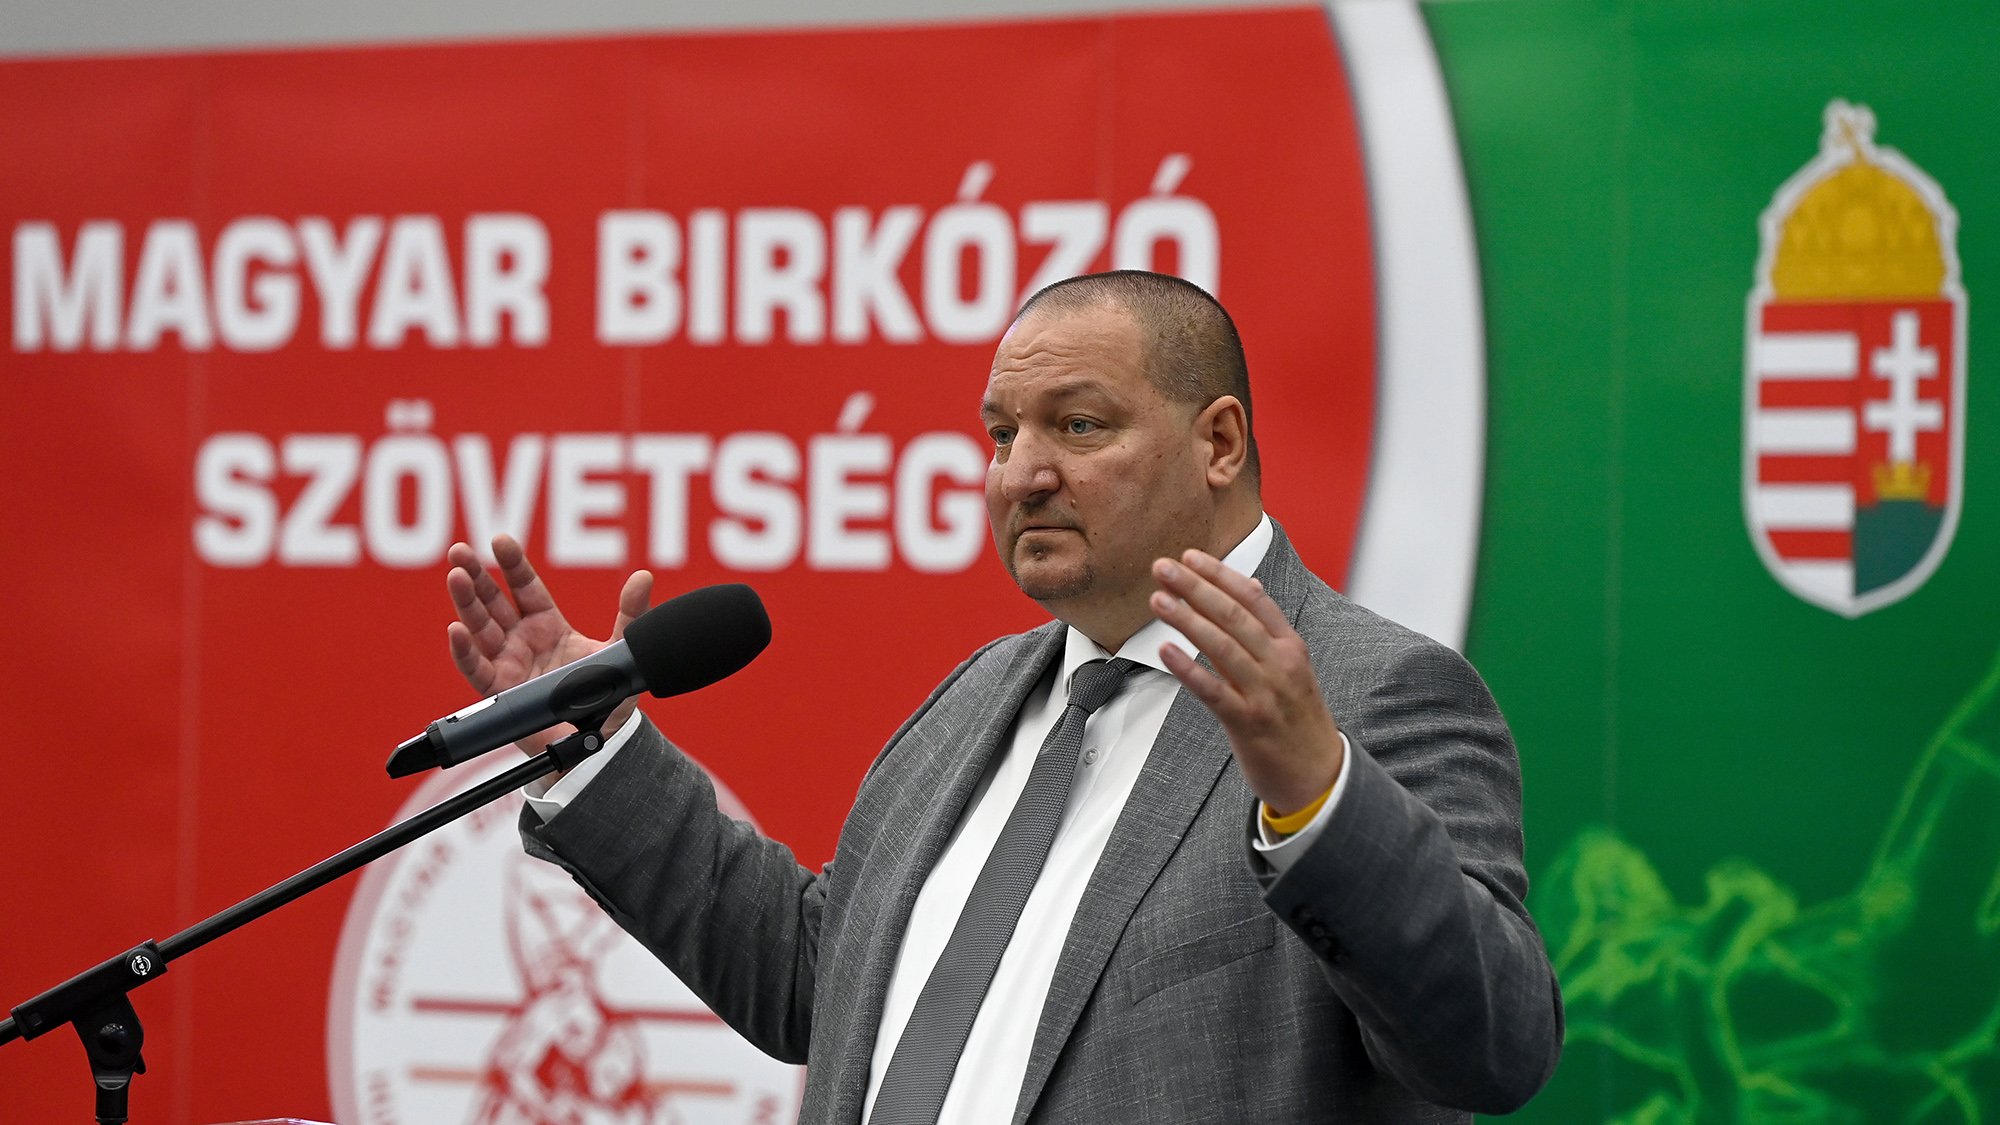 Fideszes lap írta meg, hogy Németh Szilárdot kitette a régi klubja, mert nem fizette a havi 5 ezer forintot